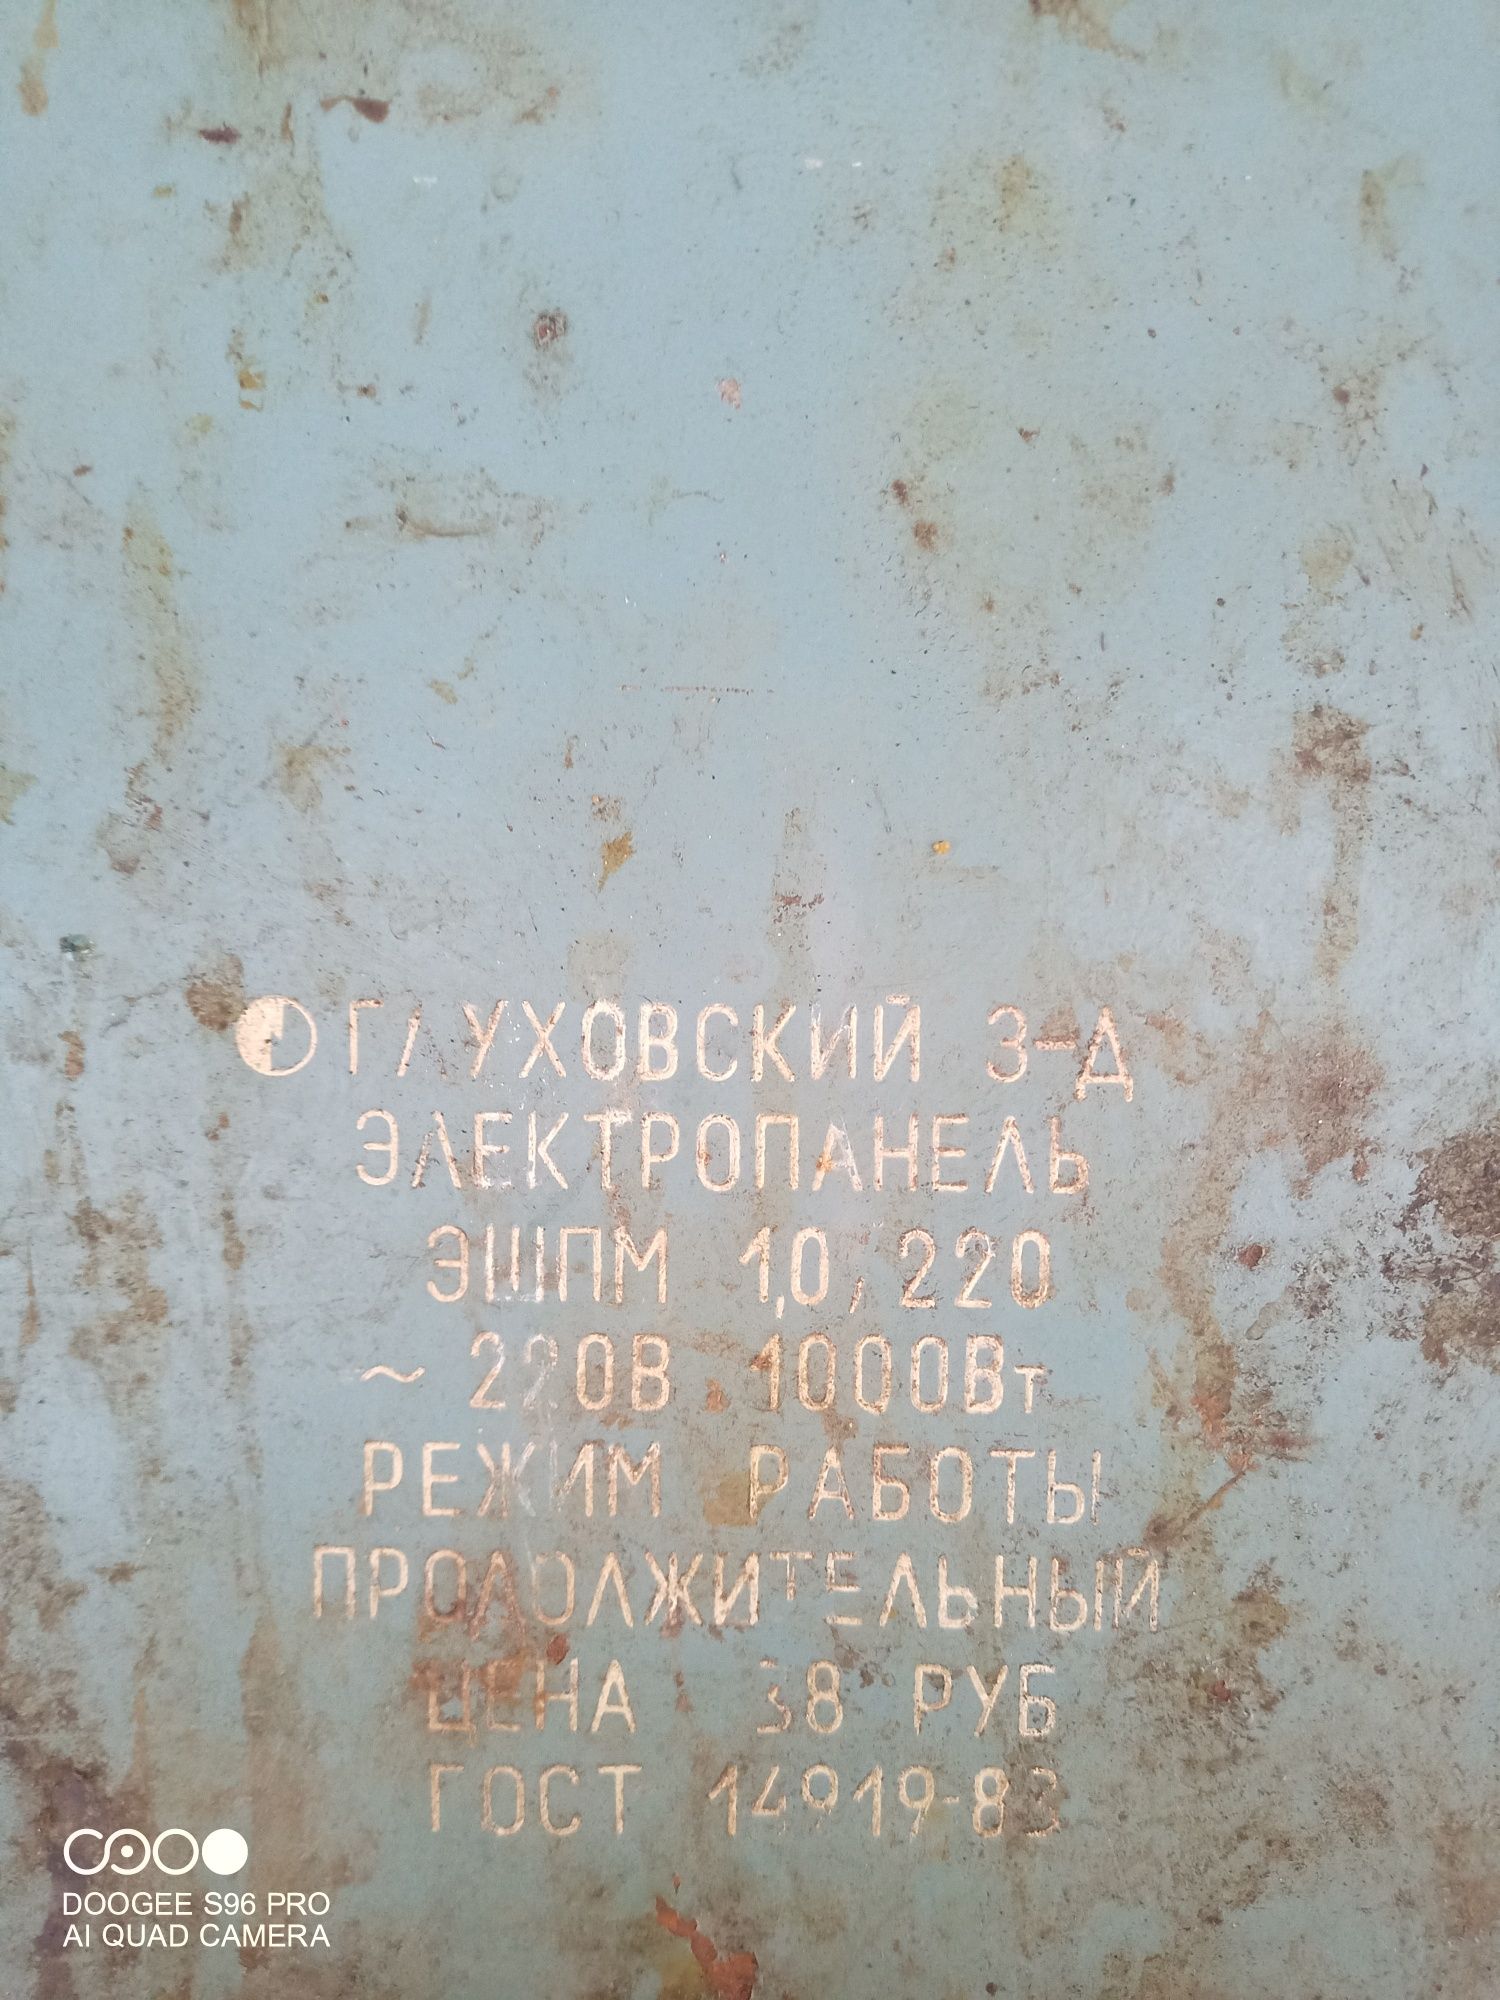 Продам электродуховку времён СССР